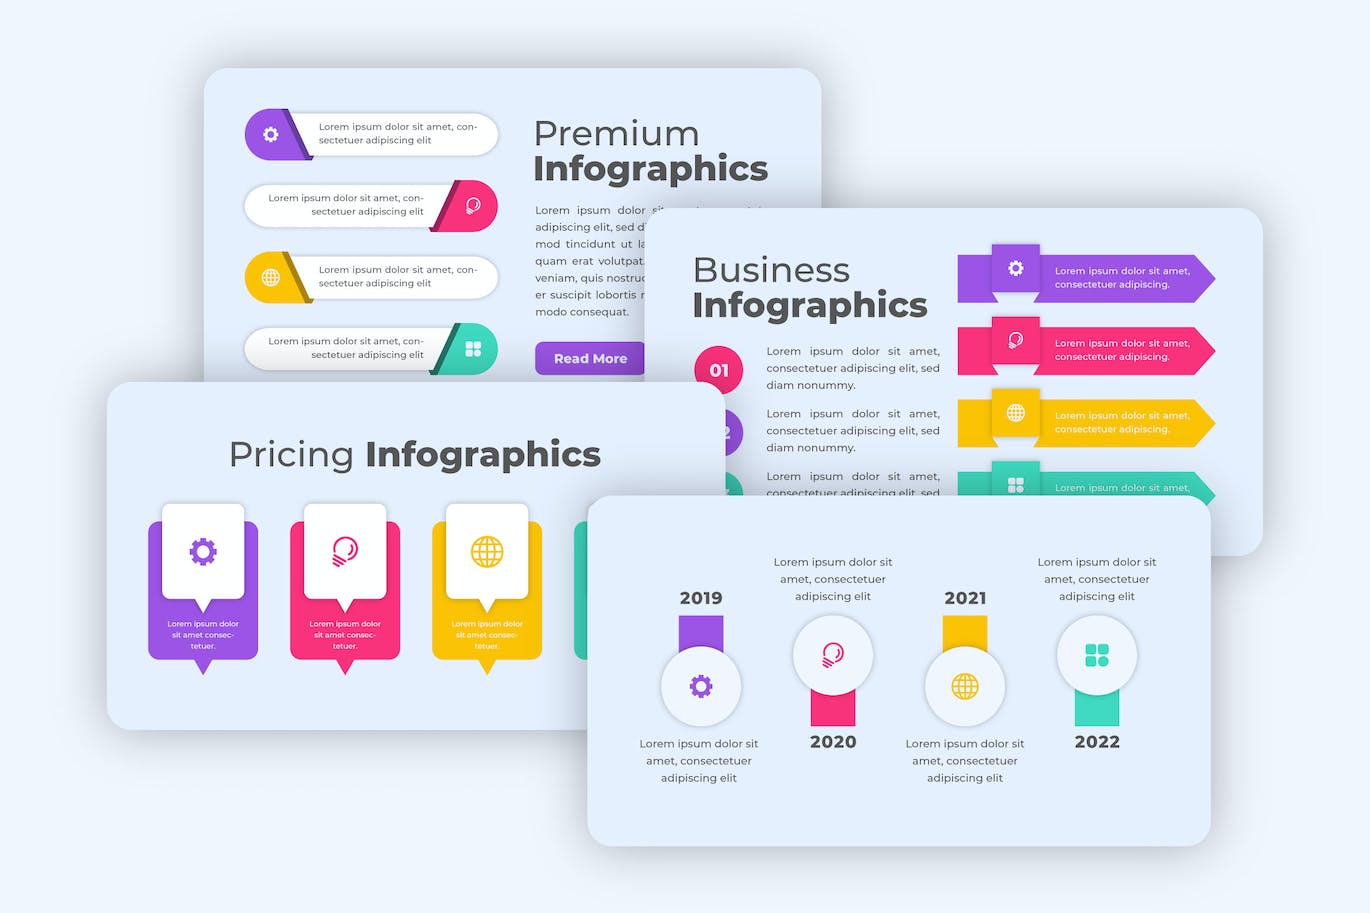 高级信息数据图表设计素材 Premium Infographics 幻灯图表 第1张